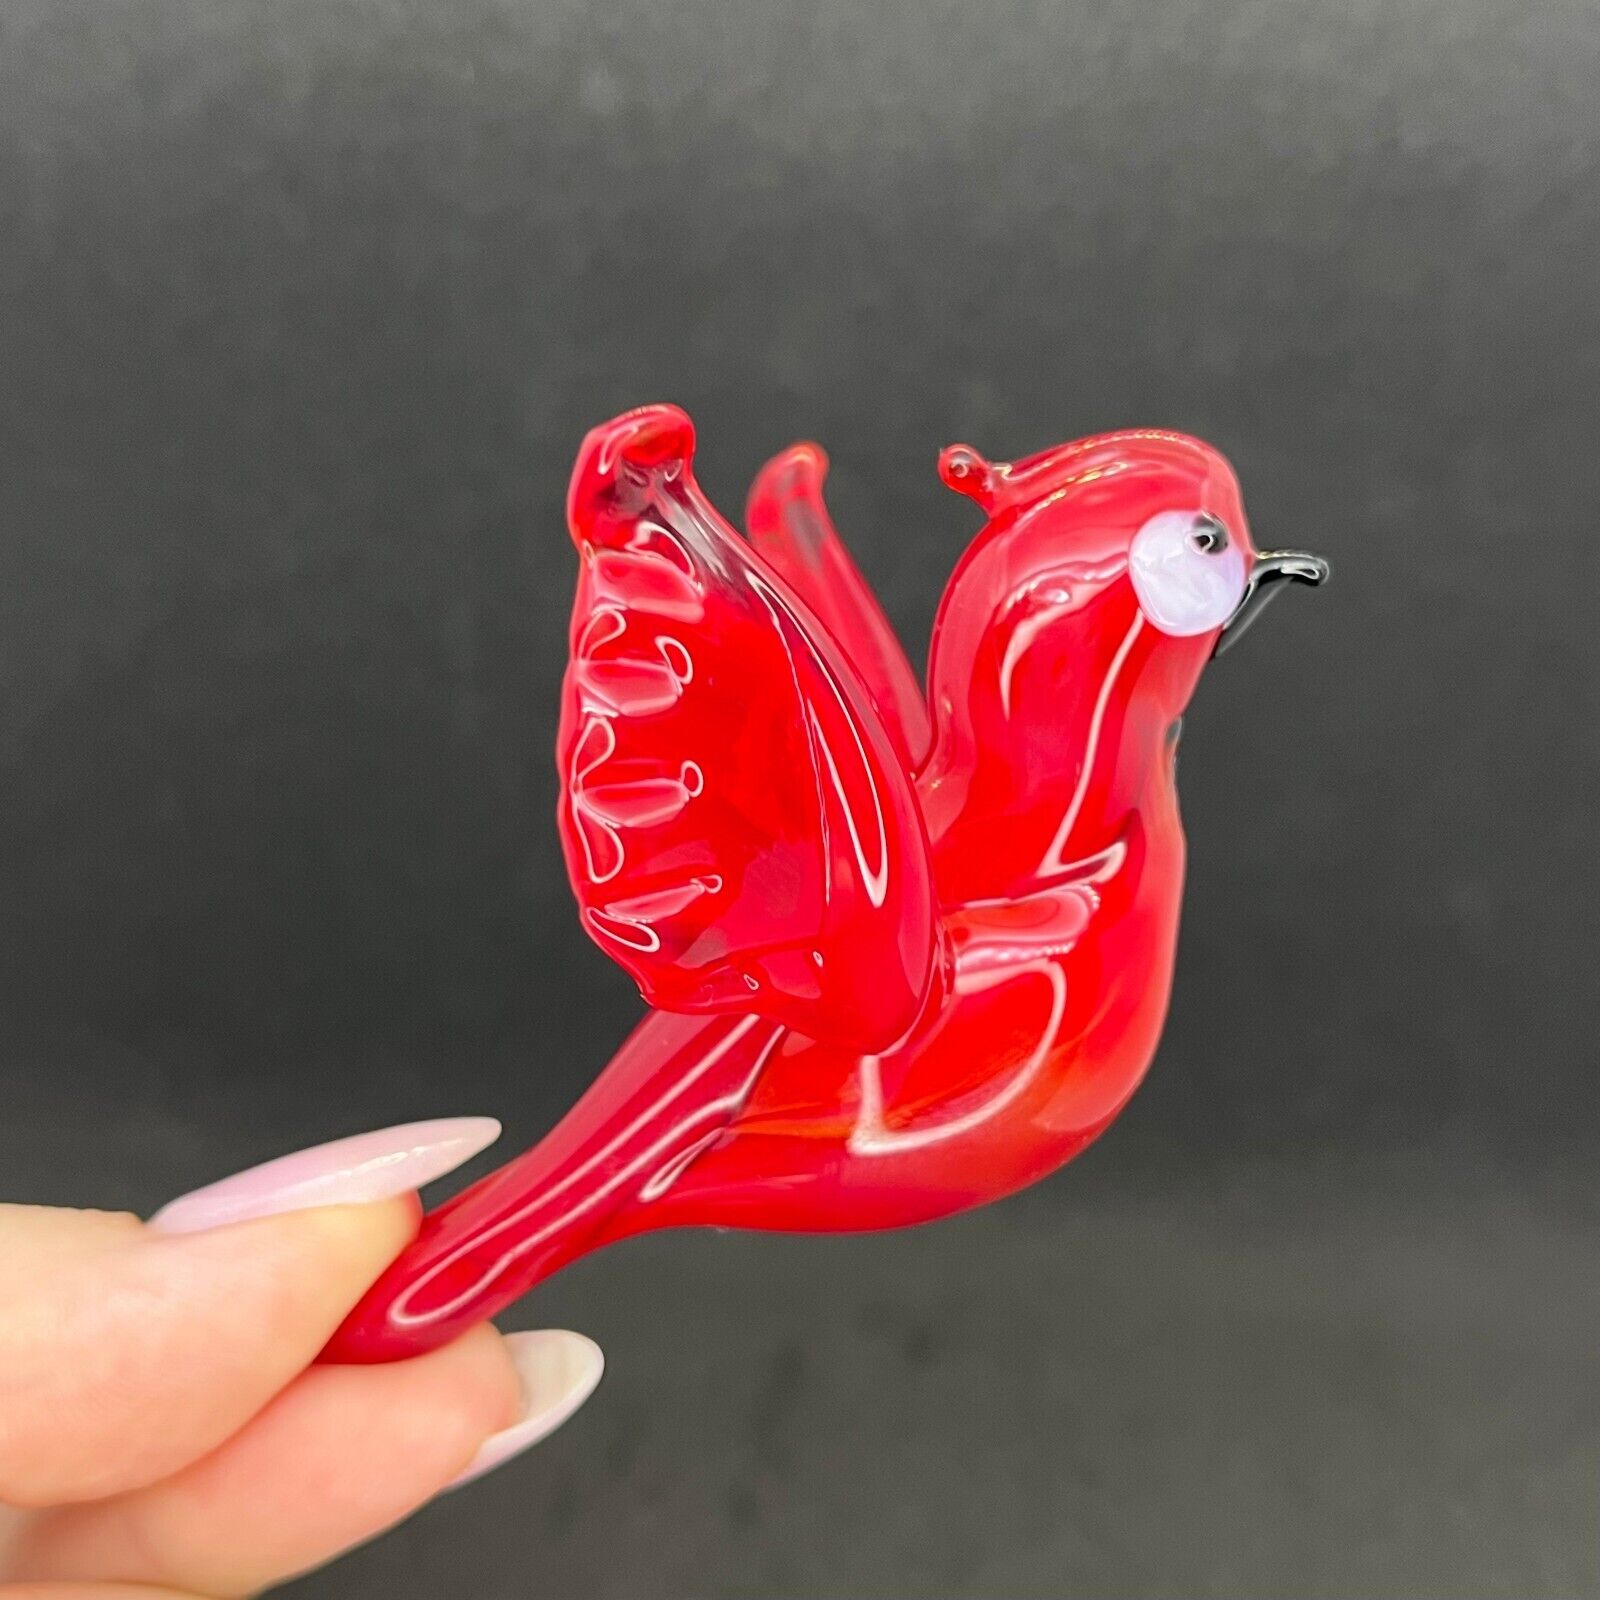 Glass Cardinal Bird Figurine - Red Glass Cardinal Sculpture - Blown Glass Bird